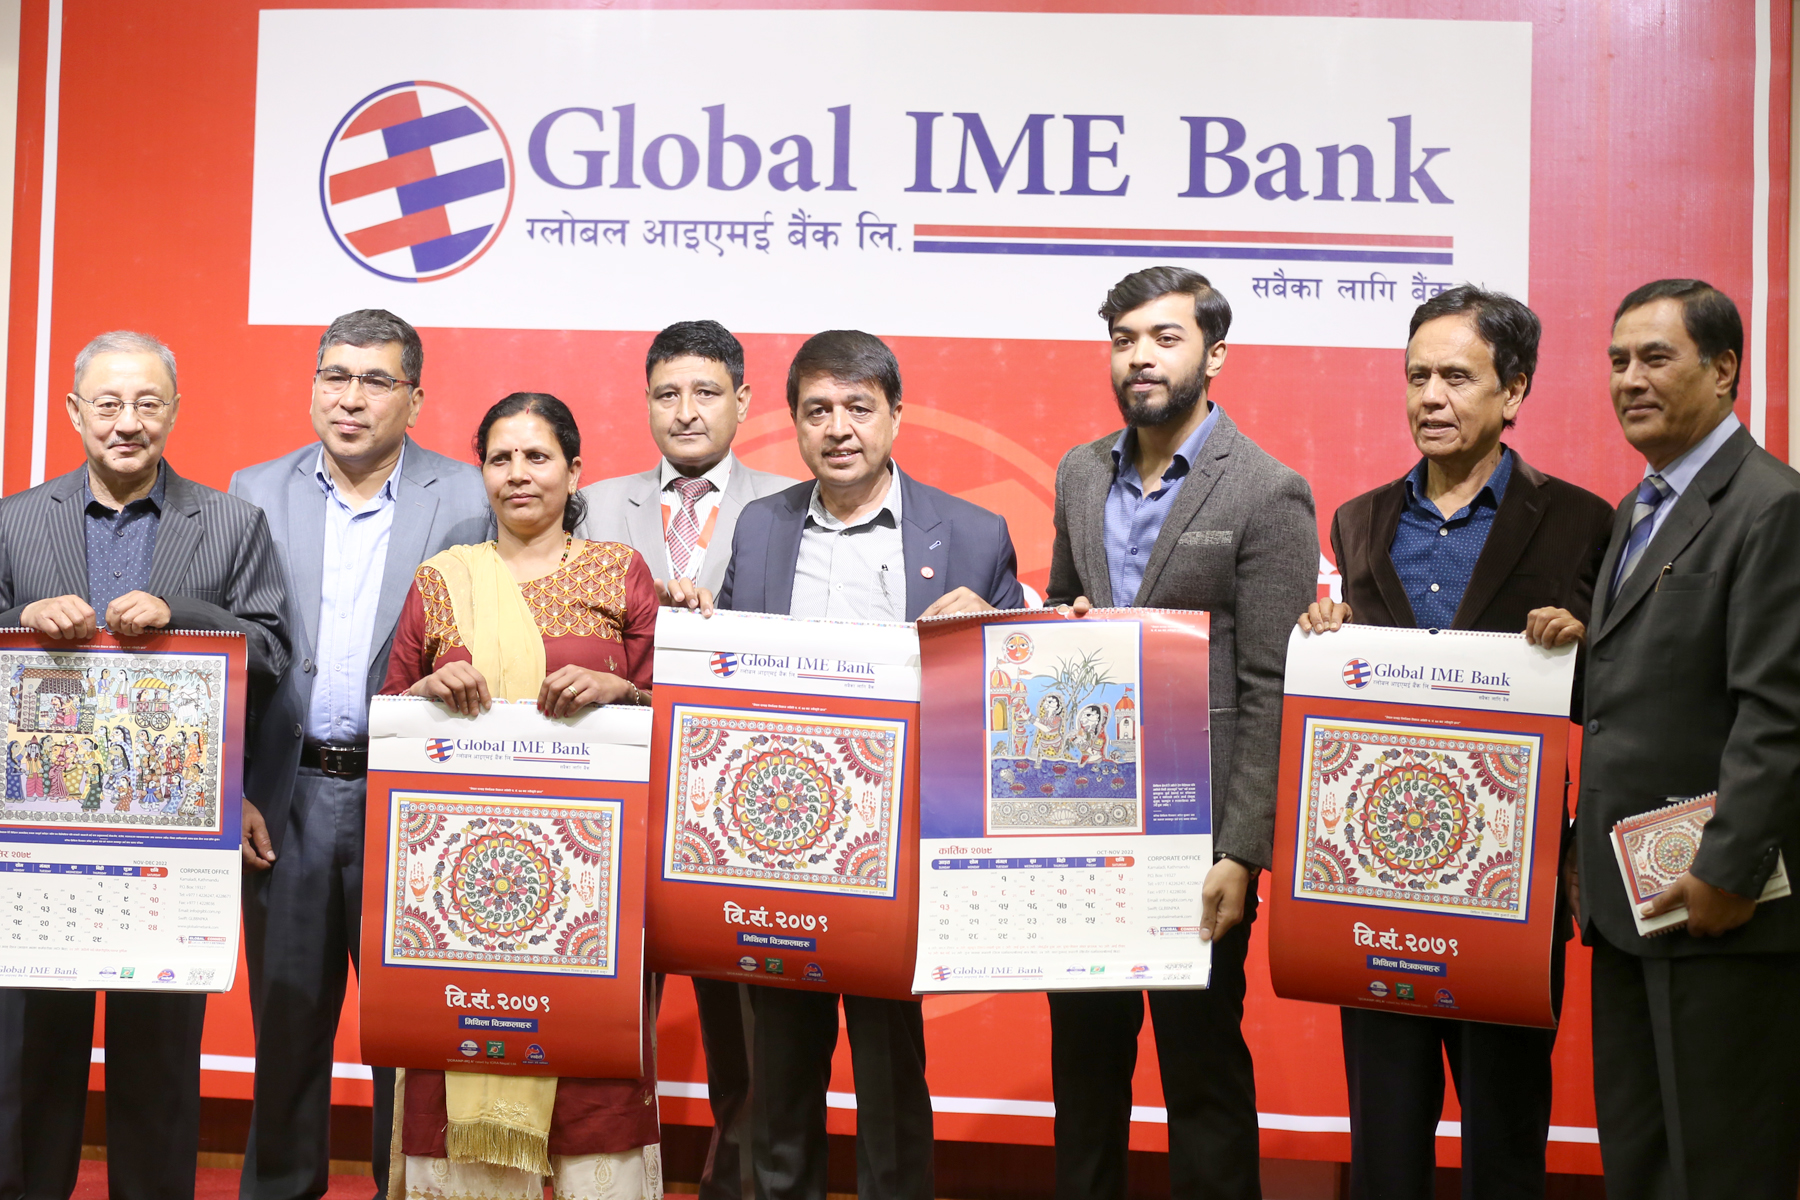 ग्लोबल आइएमई बैंकको मिथिला चित्र अंकित क्यालेण्डर सार्वजनिक